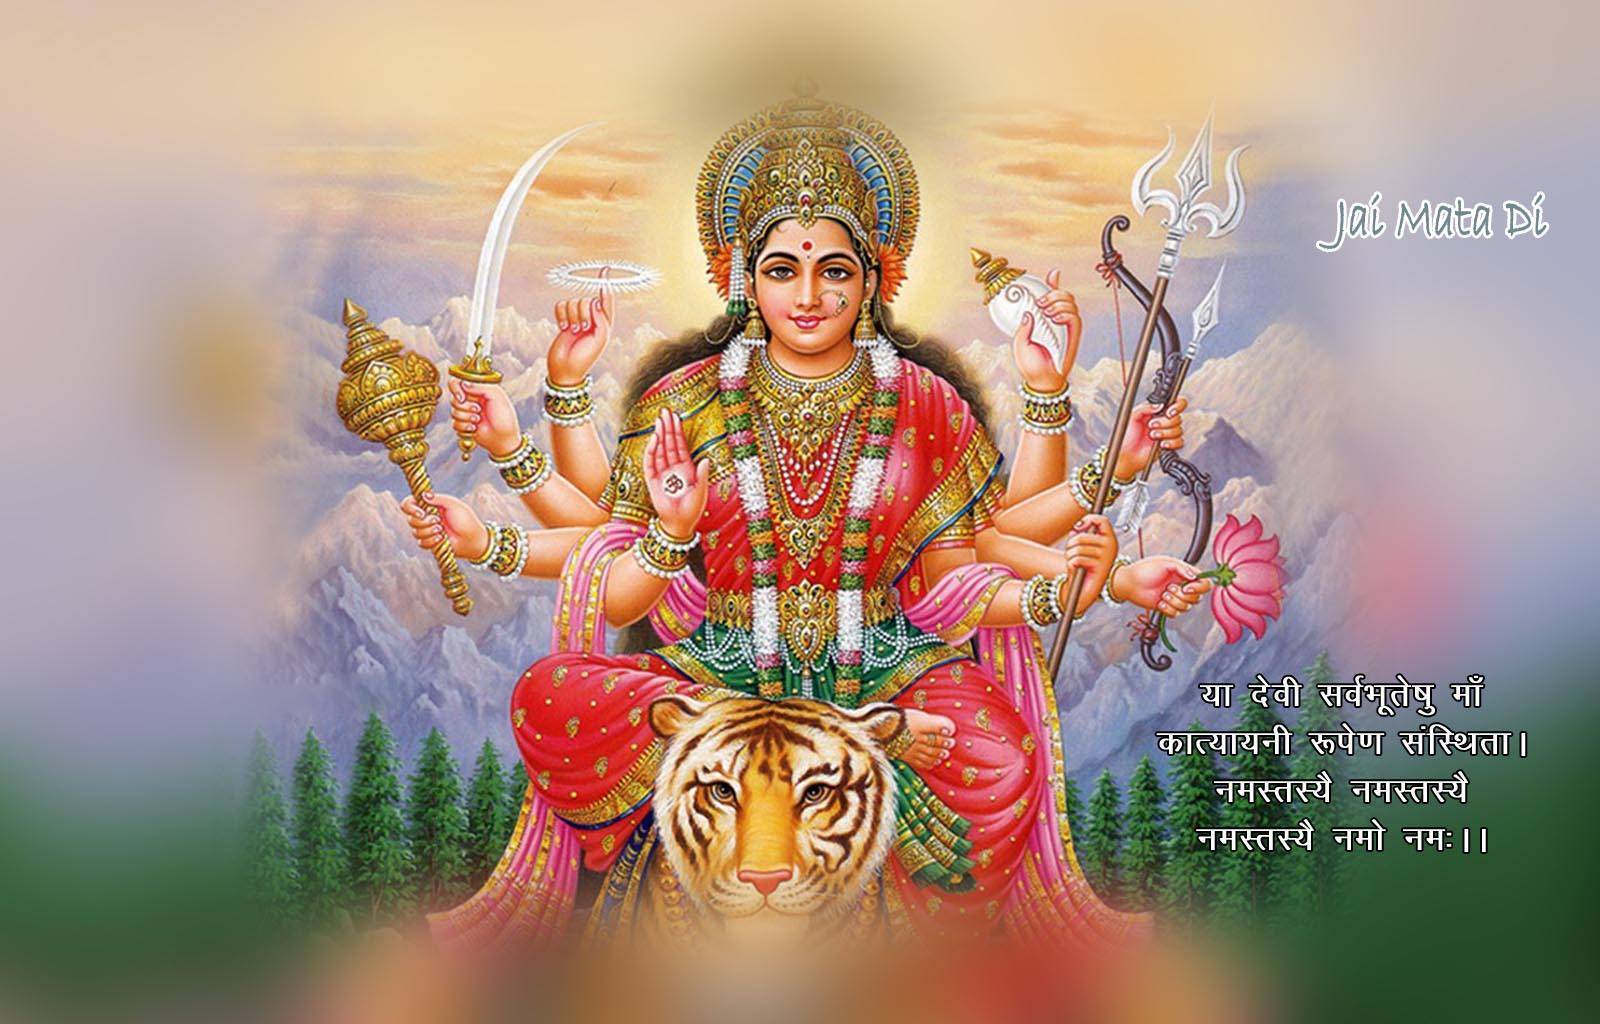 Одна из самых почитаемых богинь в индуизме – парвати, супруга шивы